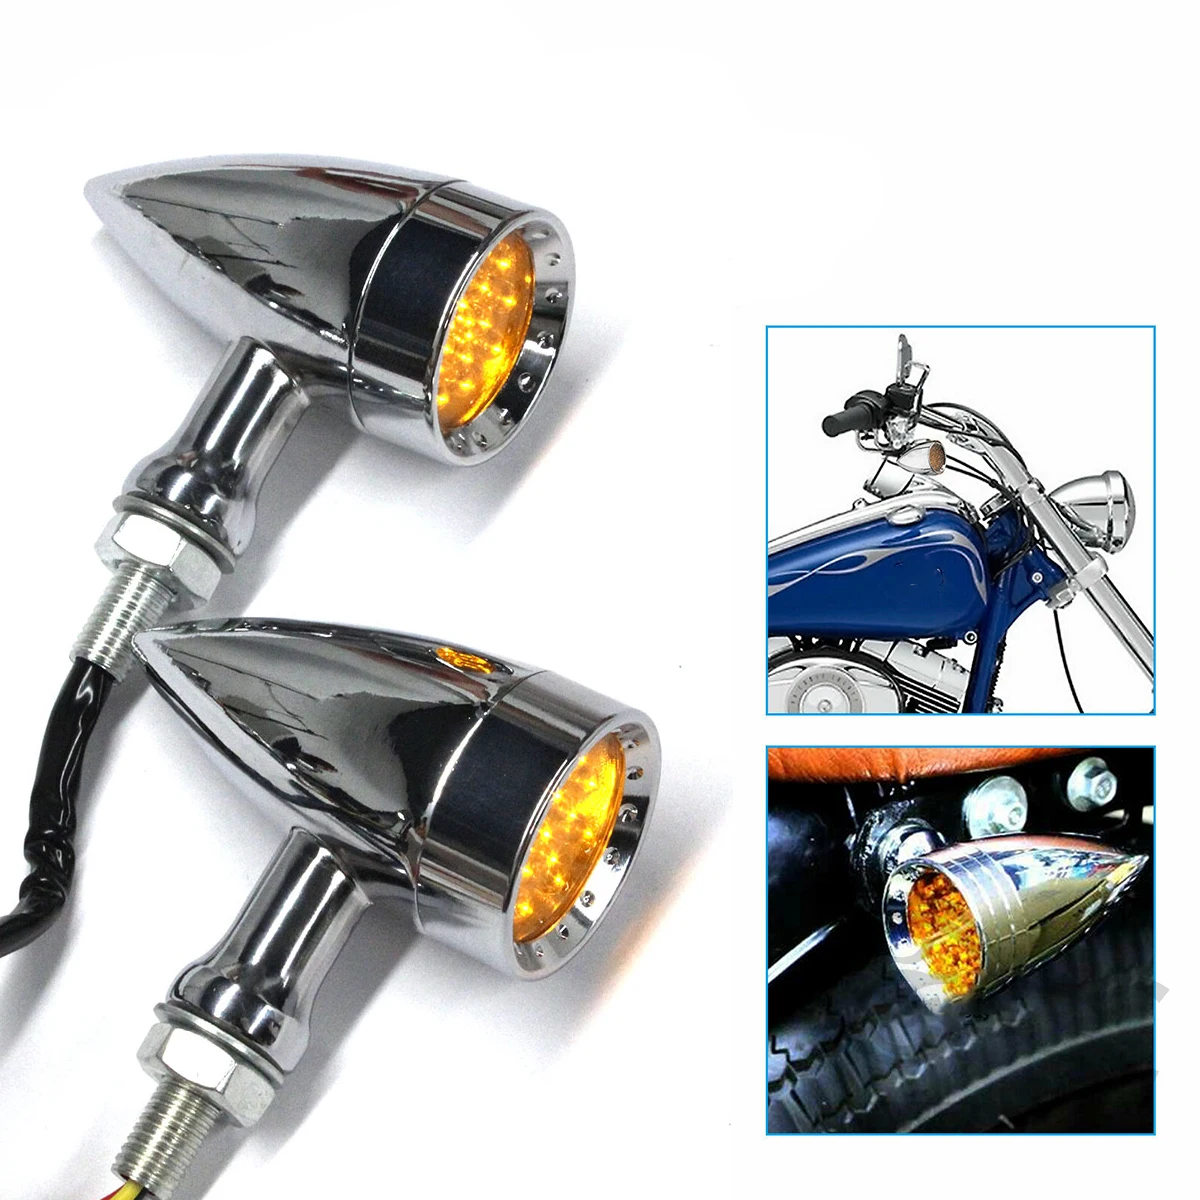 

1 шт. светодиодный указатель поворота для мотоцикла для Suzuki Yamaha Honda Harley, световые индикаторы, установка, Ретро лампа поворота